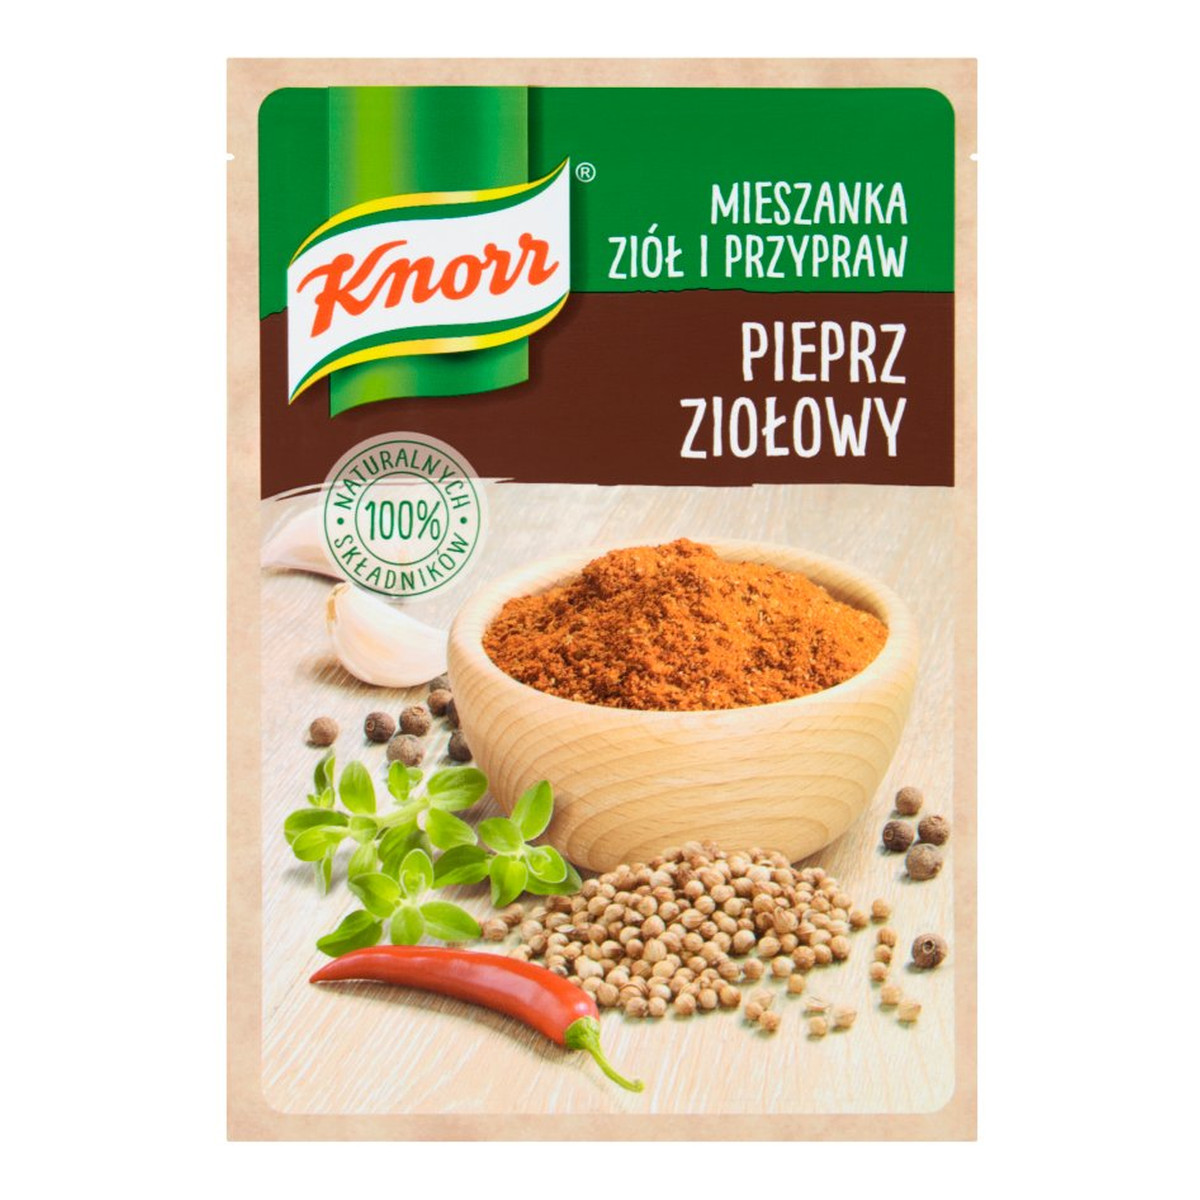 Knorr Mieszanka ziół i przypraw pieprz ziołowy 15g